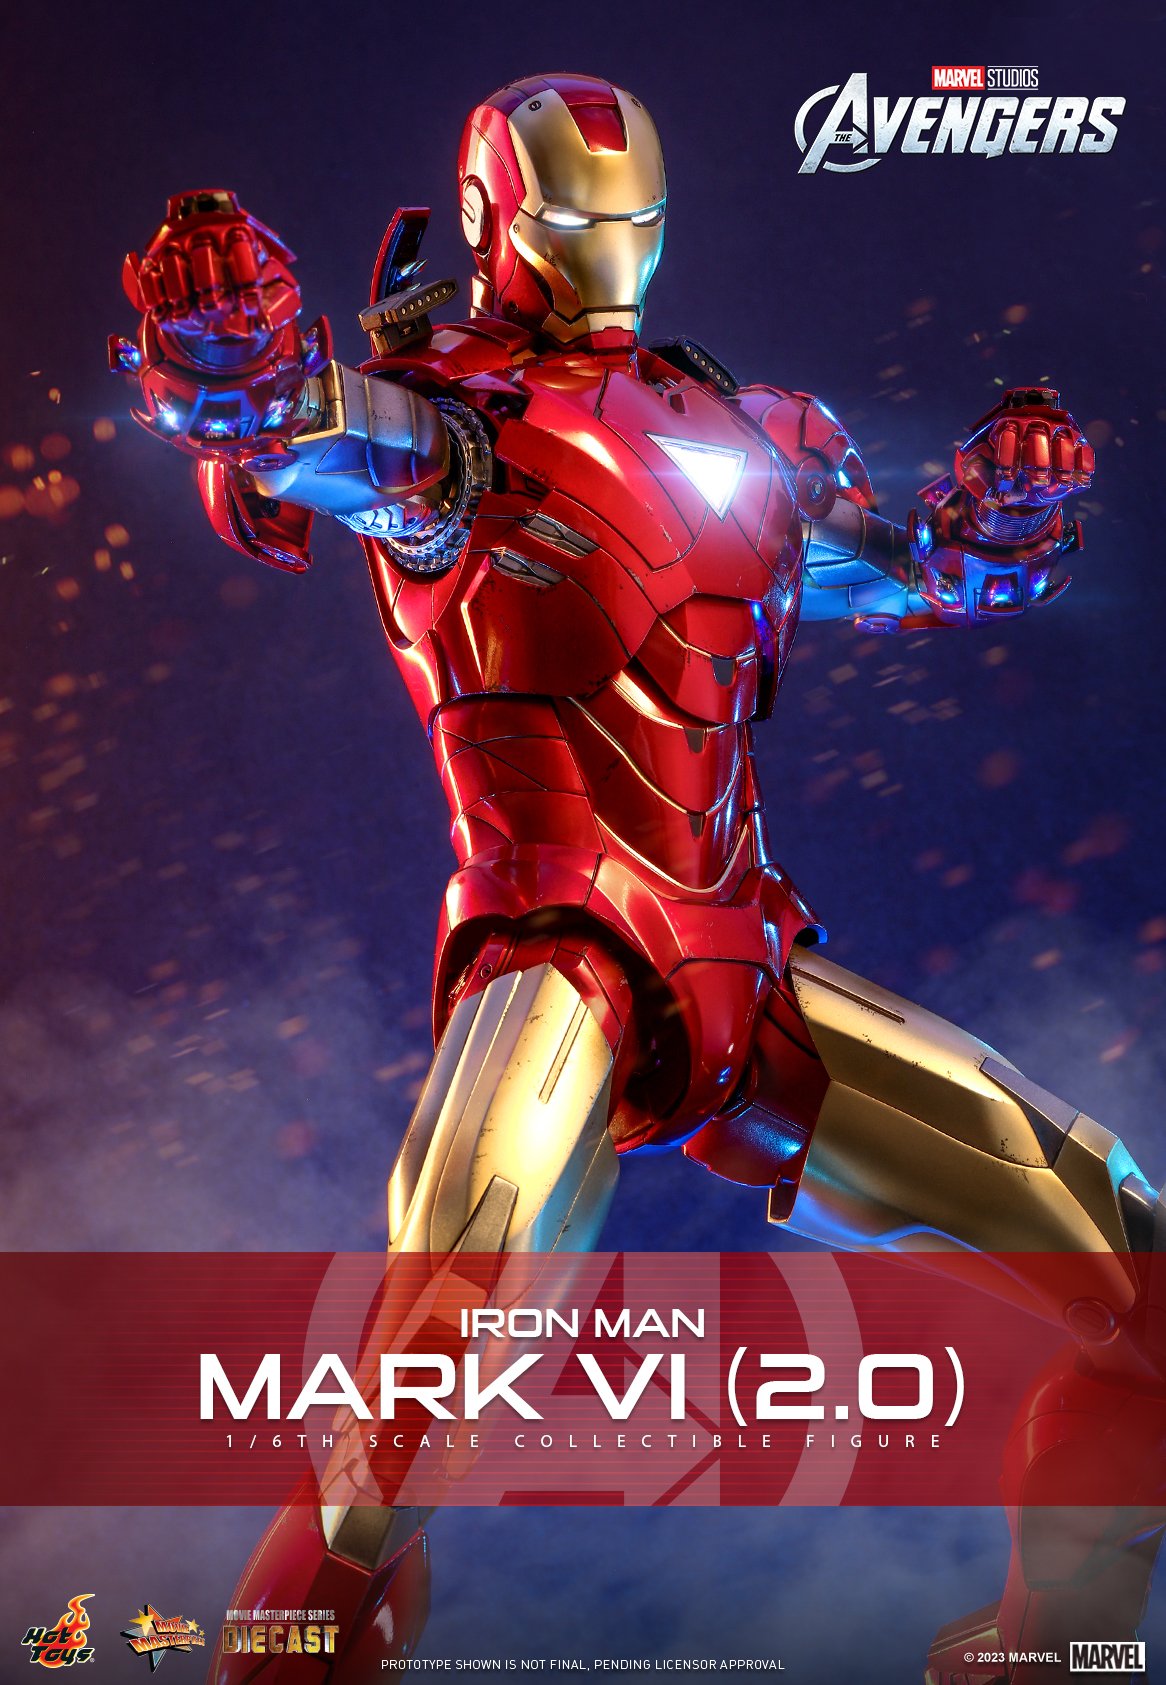 Iron Man Mark VI (2.0): Được nâng cấp với những tính năng vượt trội hơn, Iron Man Mark VI (2.0) sẽ làm cho bạn bất ngờ và cảm thấy hào hứng khi chiêm ngưỡng hình ảnh của nó.